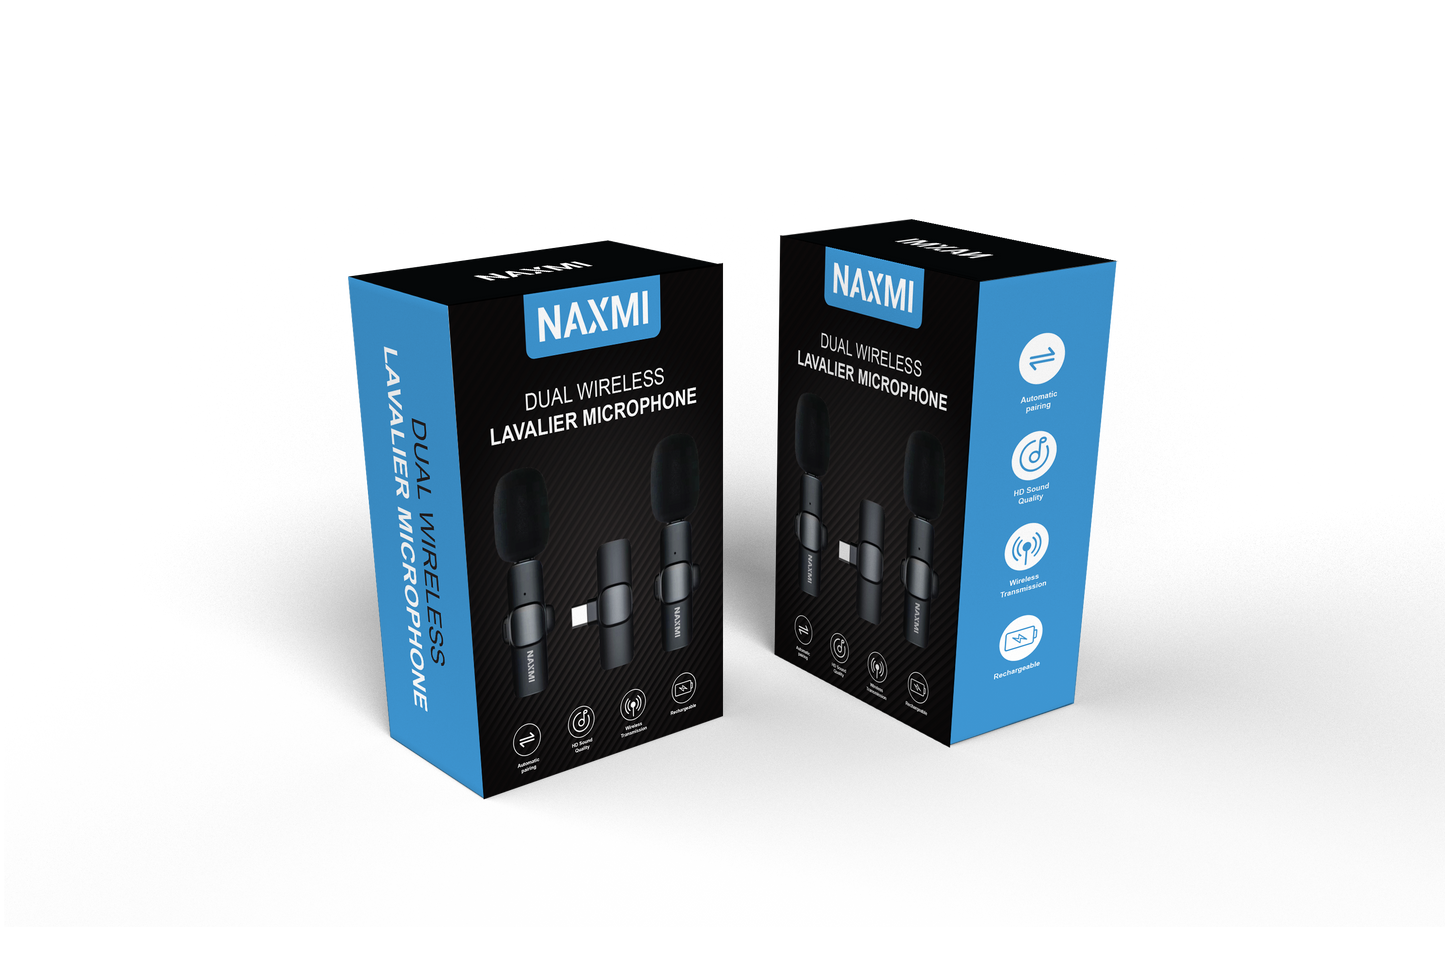 Naxmi Dual Wireless Lavalier Microphone